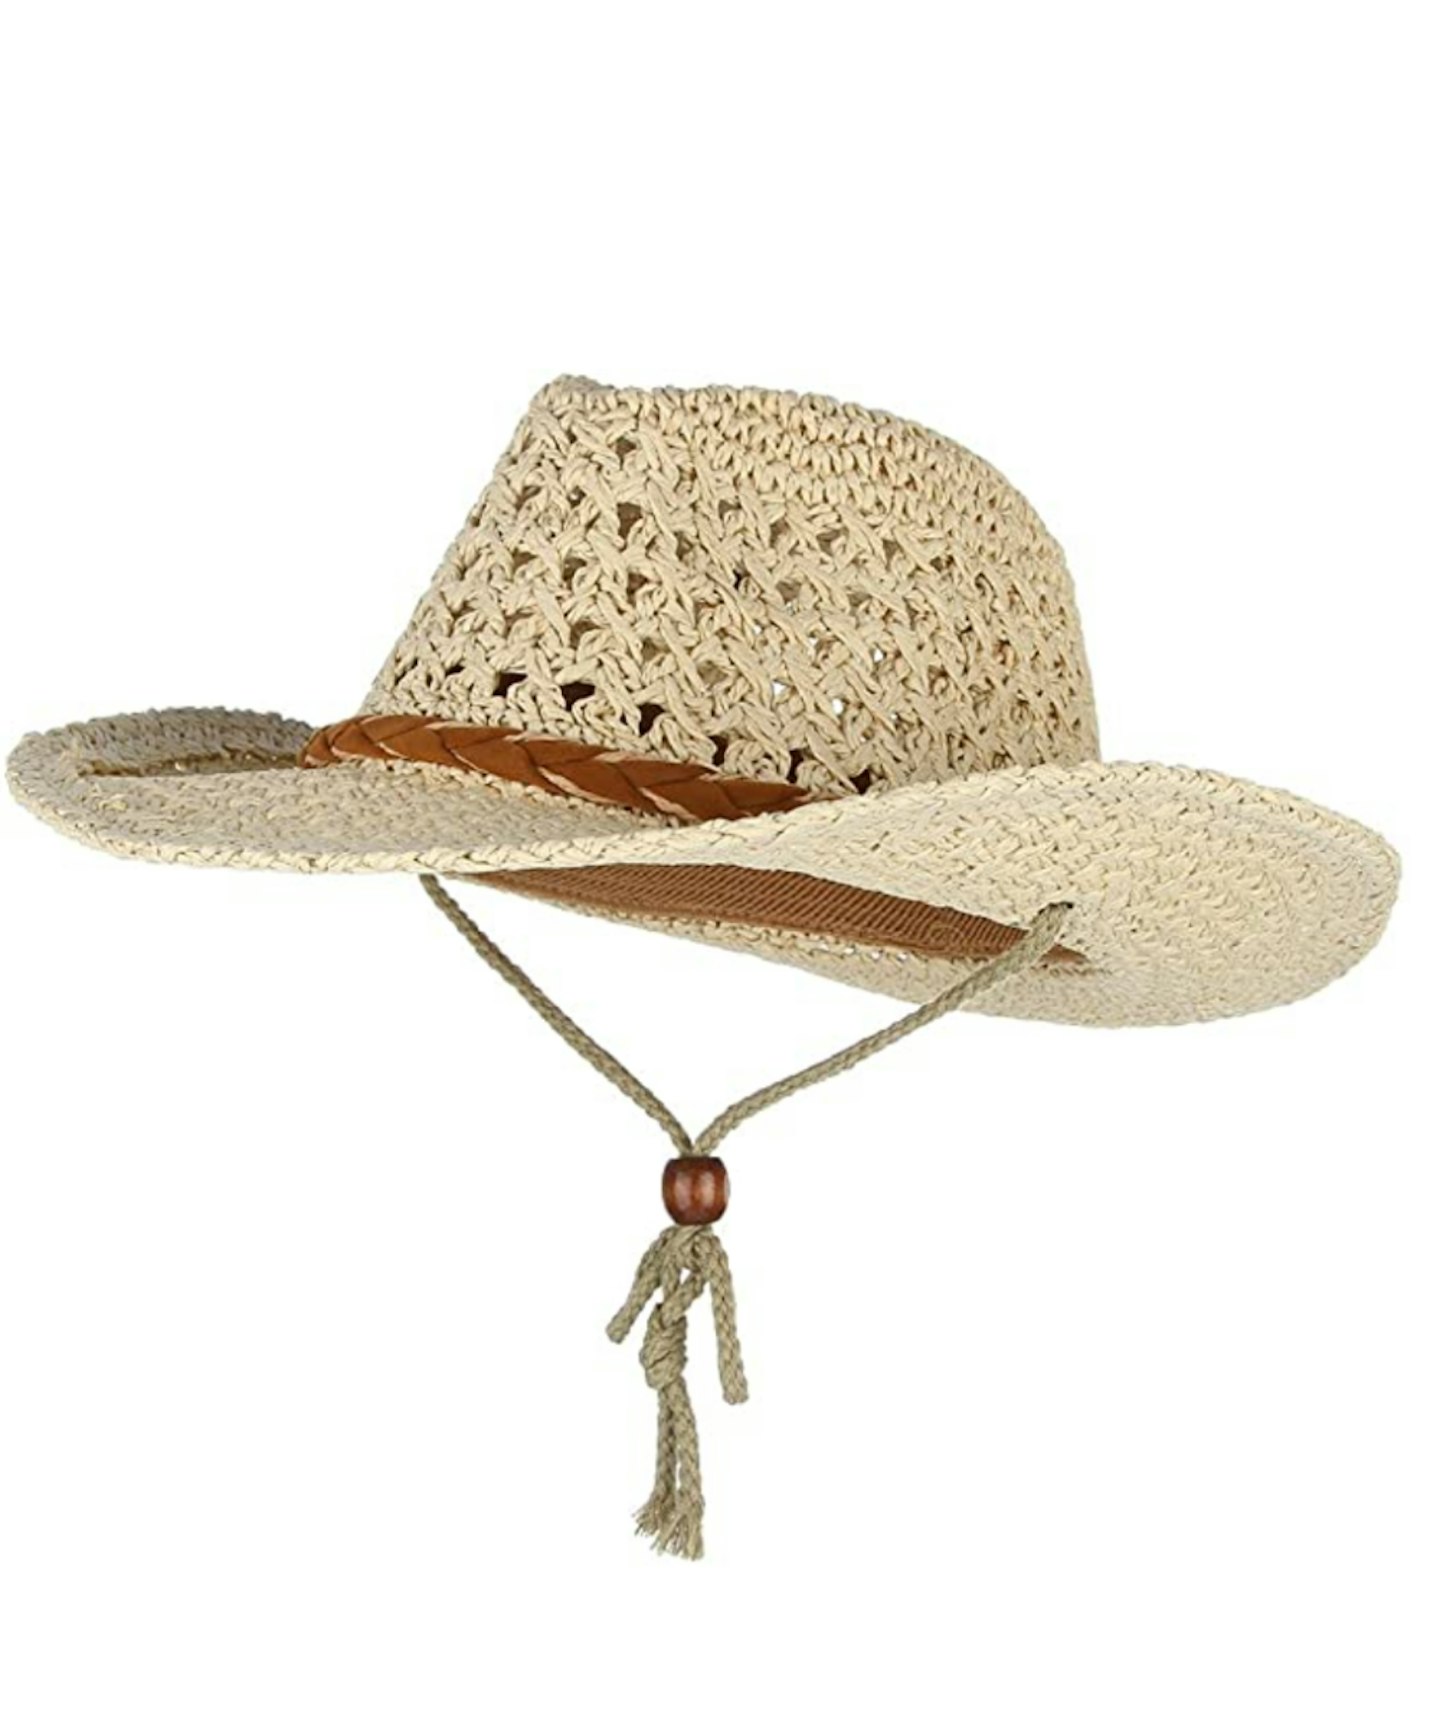 EOZY Unisex Straw Cowboy Hat